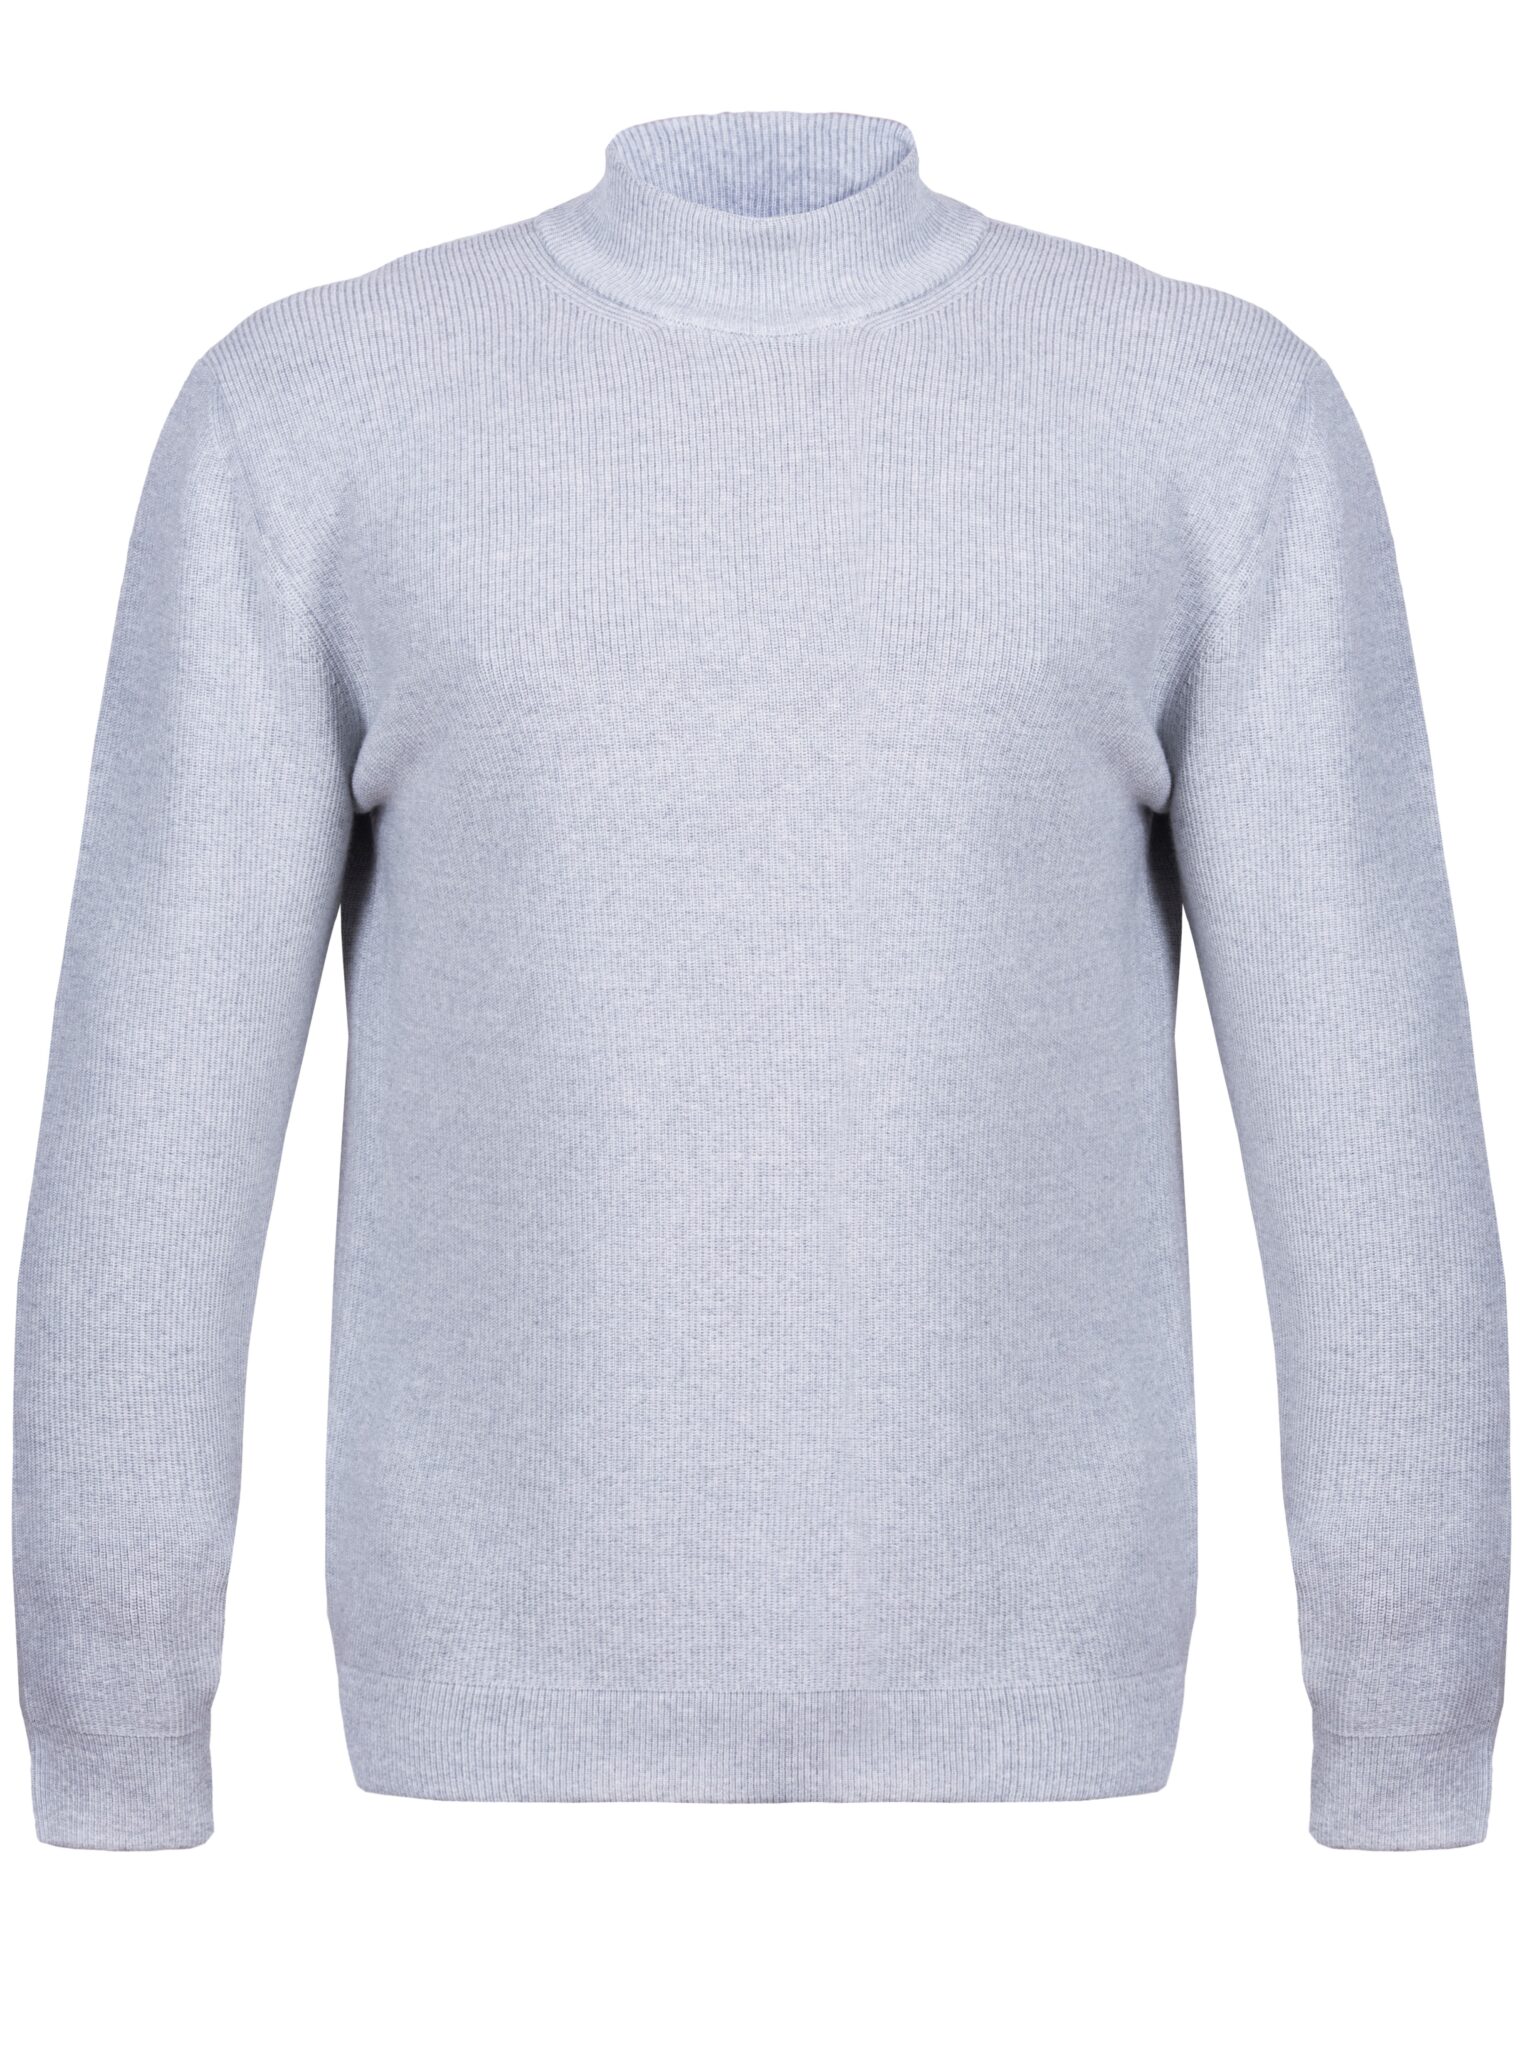 Men's Sweater turtleneck